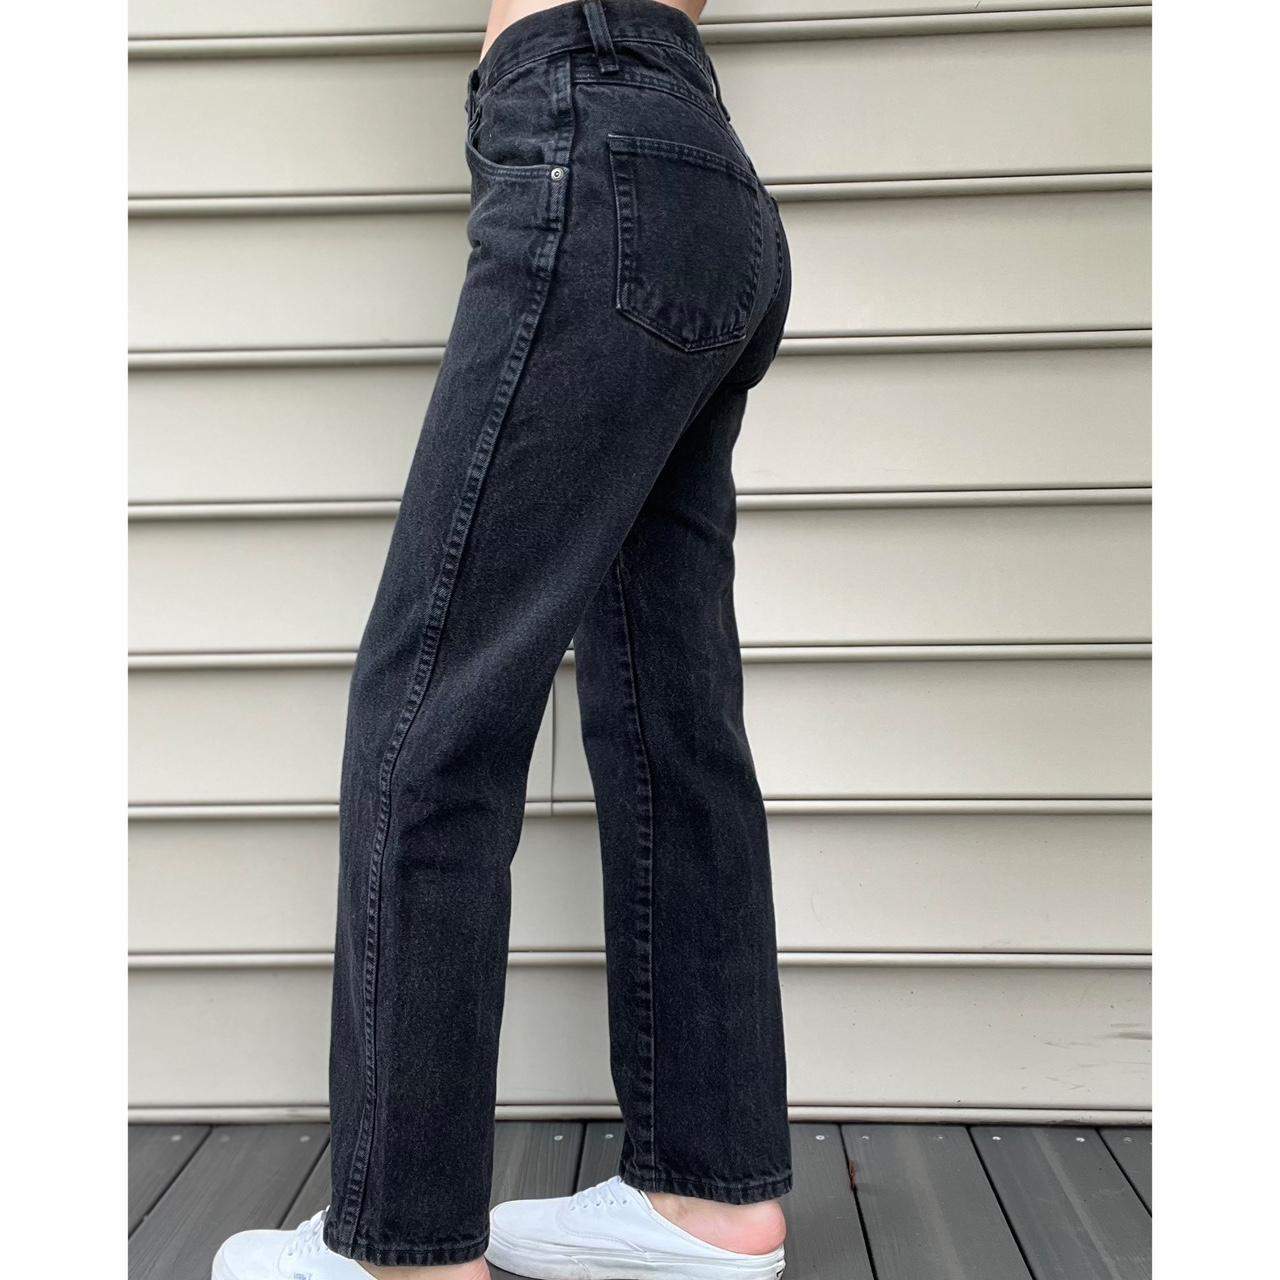 Vintage Black Wrangler Jeans Straight leg 100%... - Depop